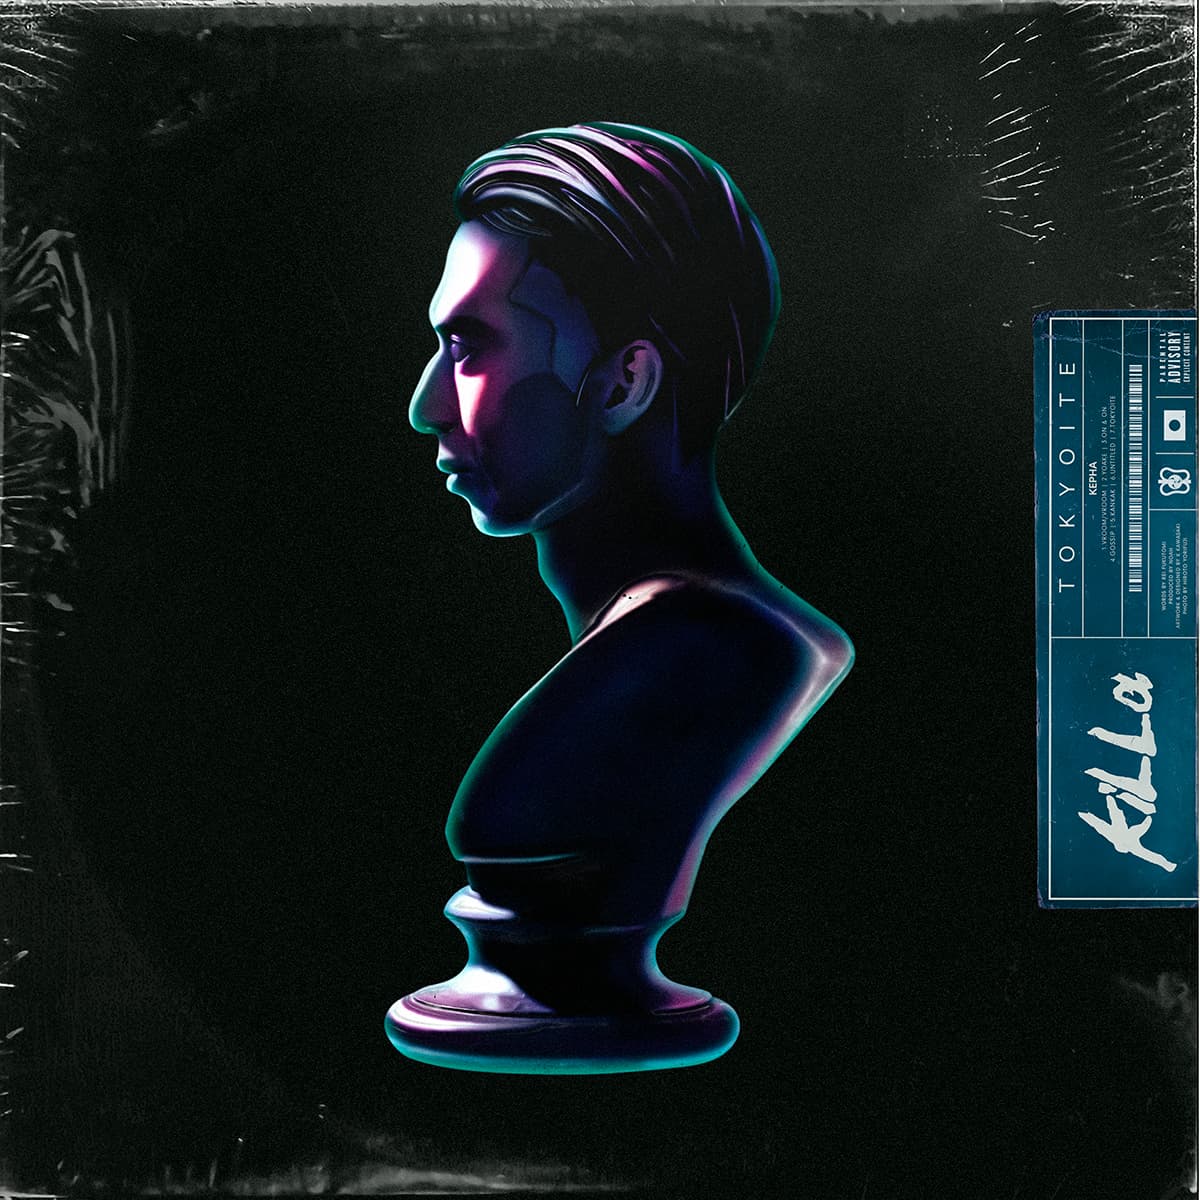 KEPHA - Digital EP "T O K Y O I T E : l" Release